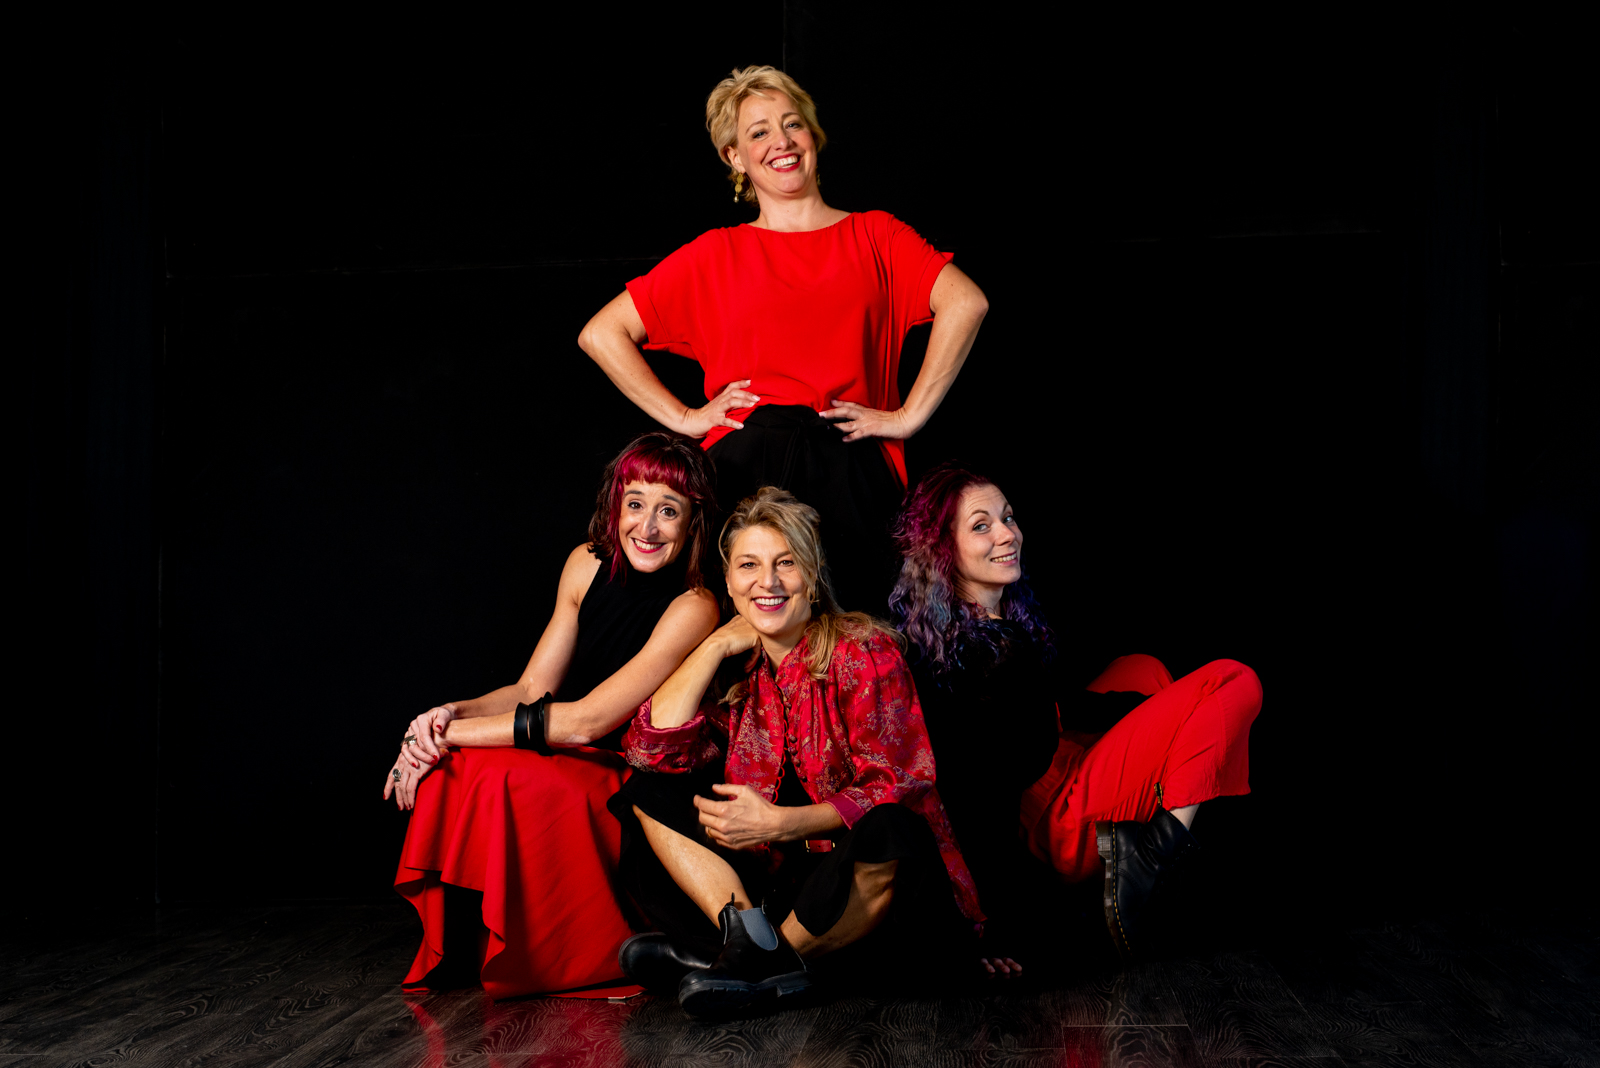 Le quattro insegnanti di SpazioMio sorridono vestite di rosso